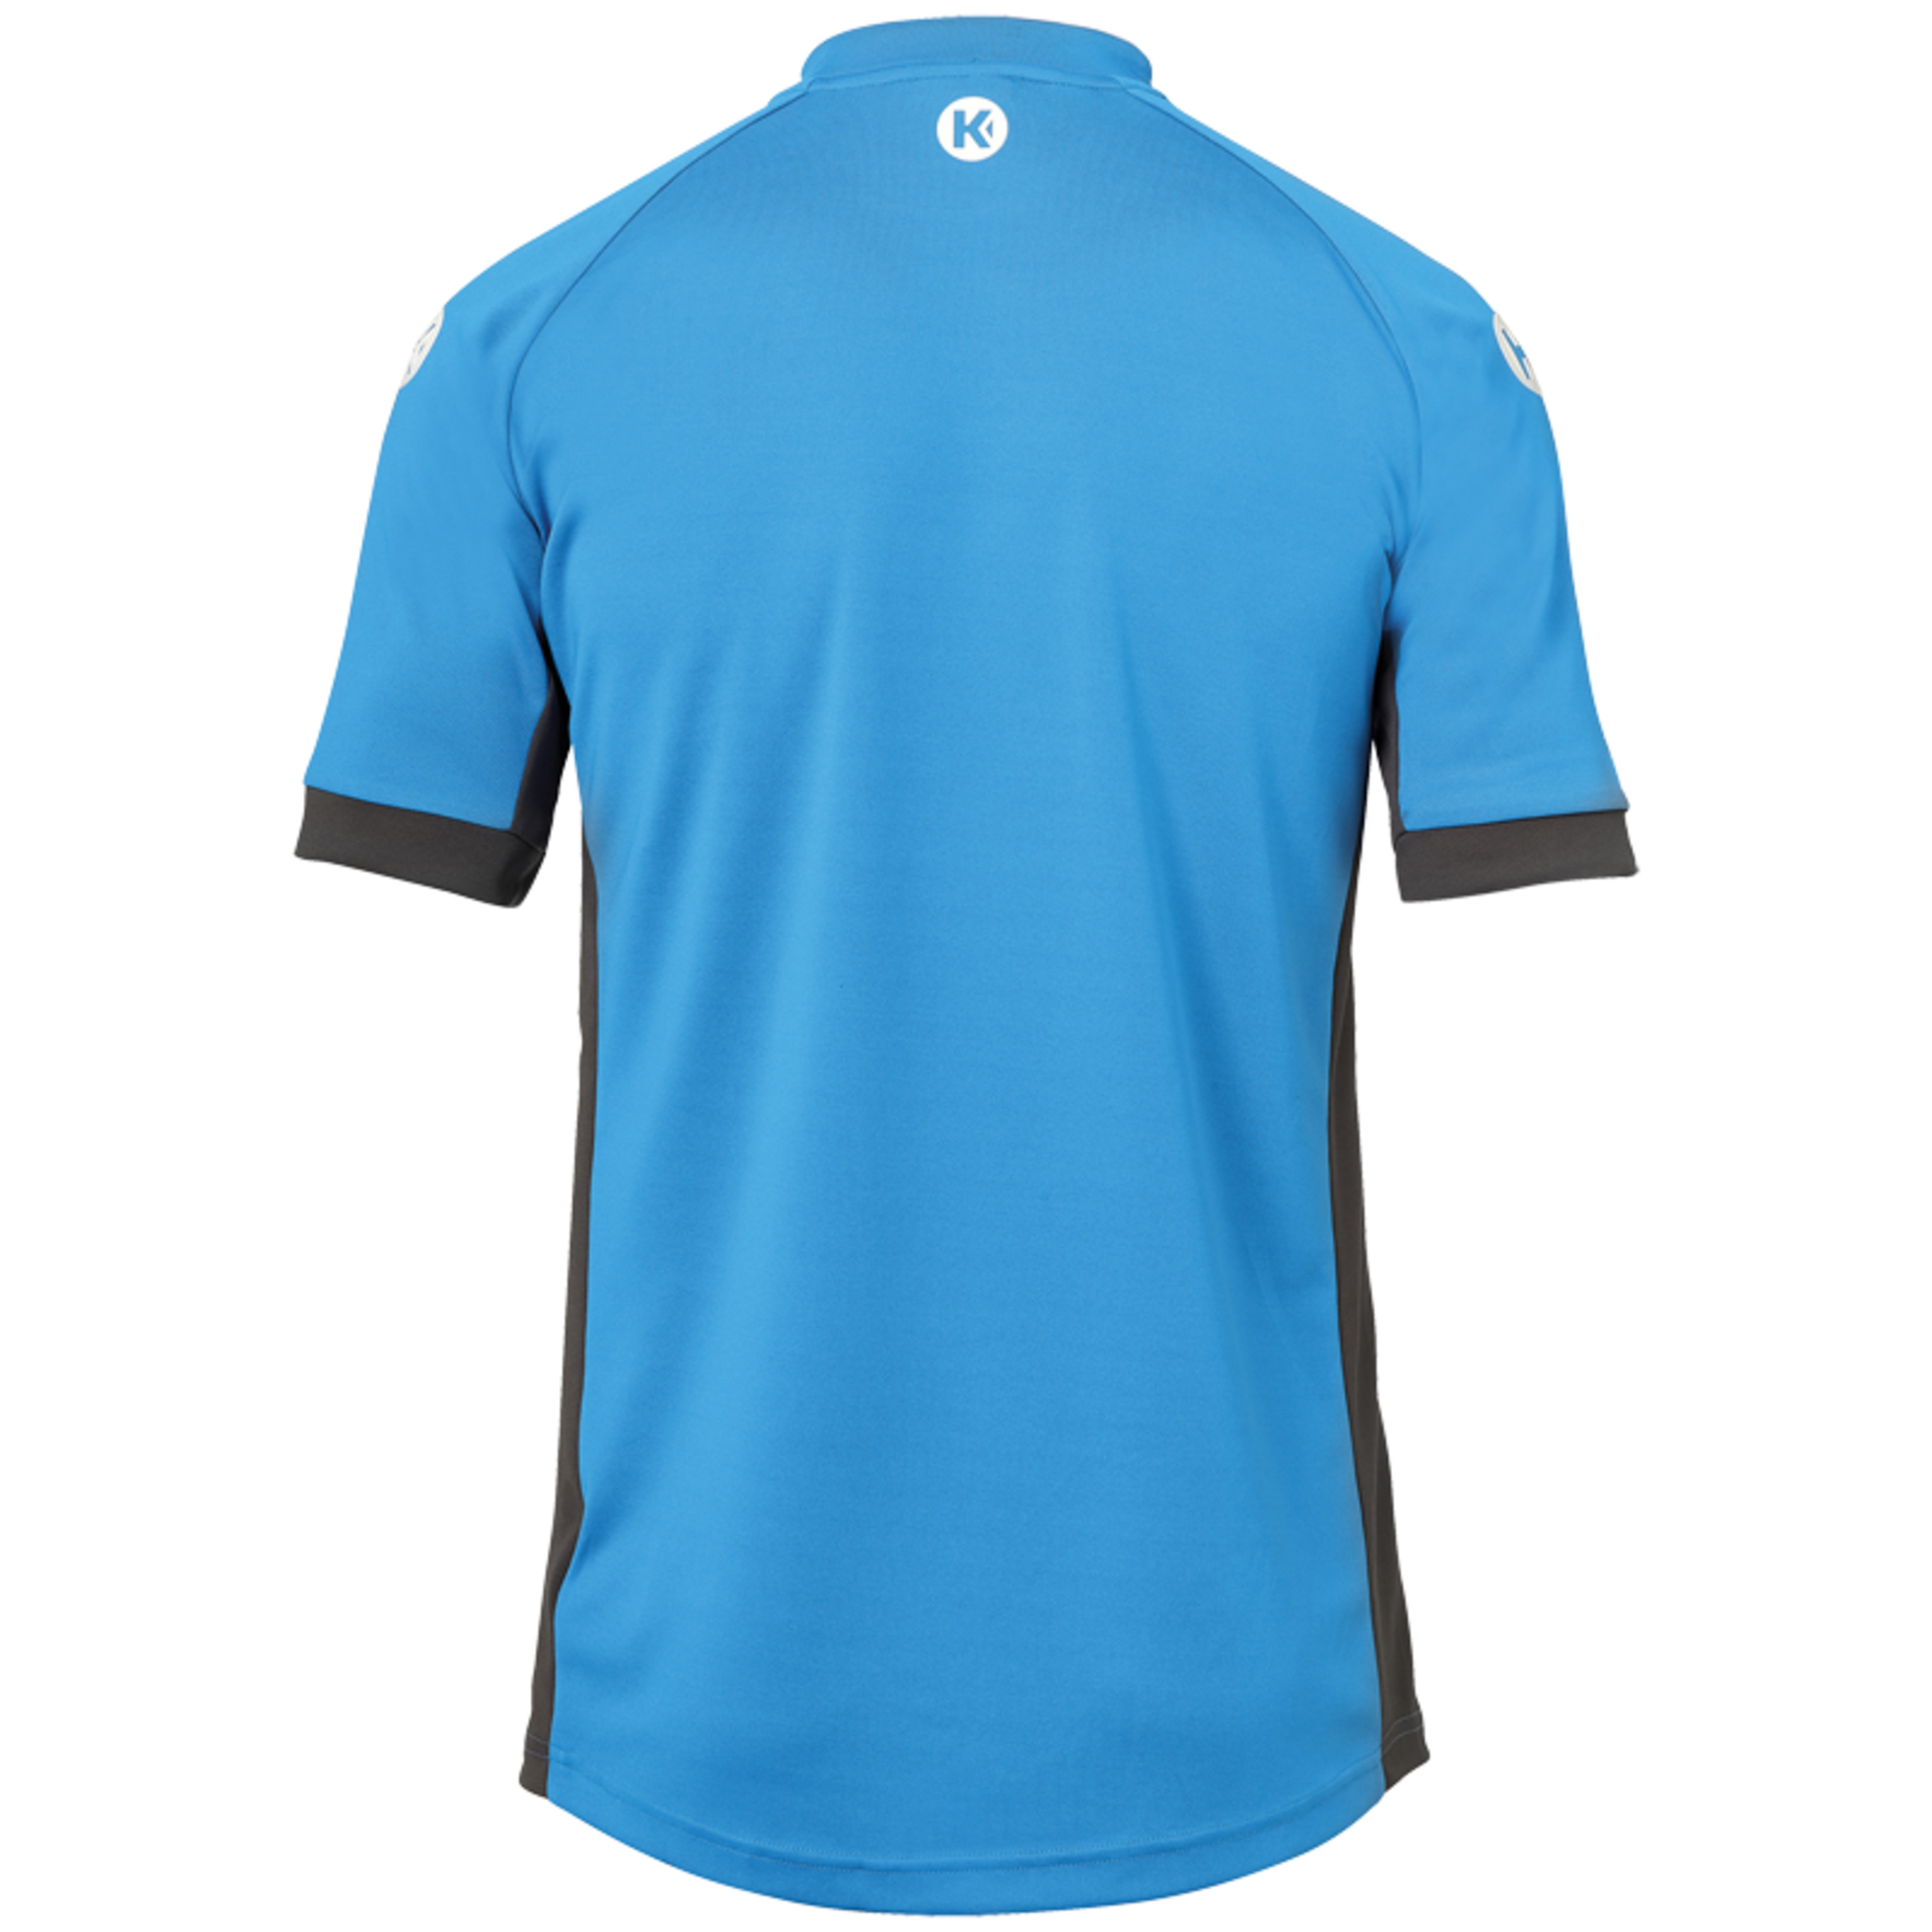 Prime Shirt Kempa Azul/antracita Kempa